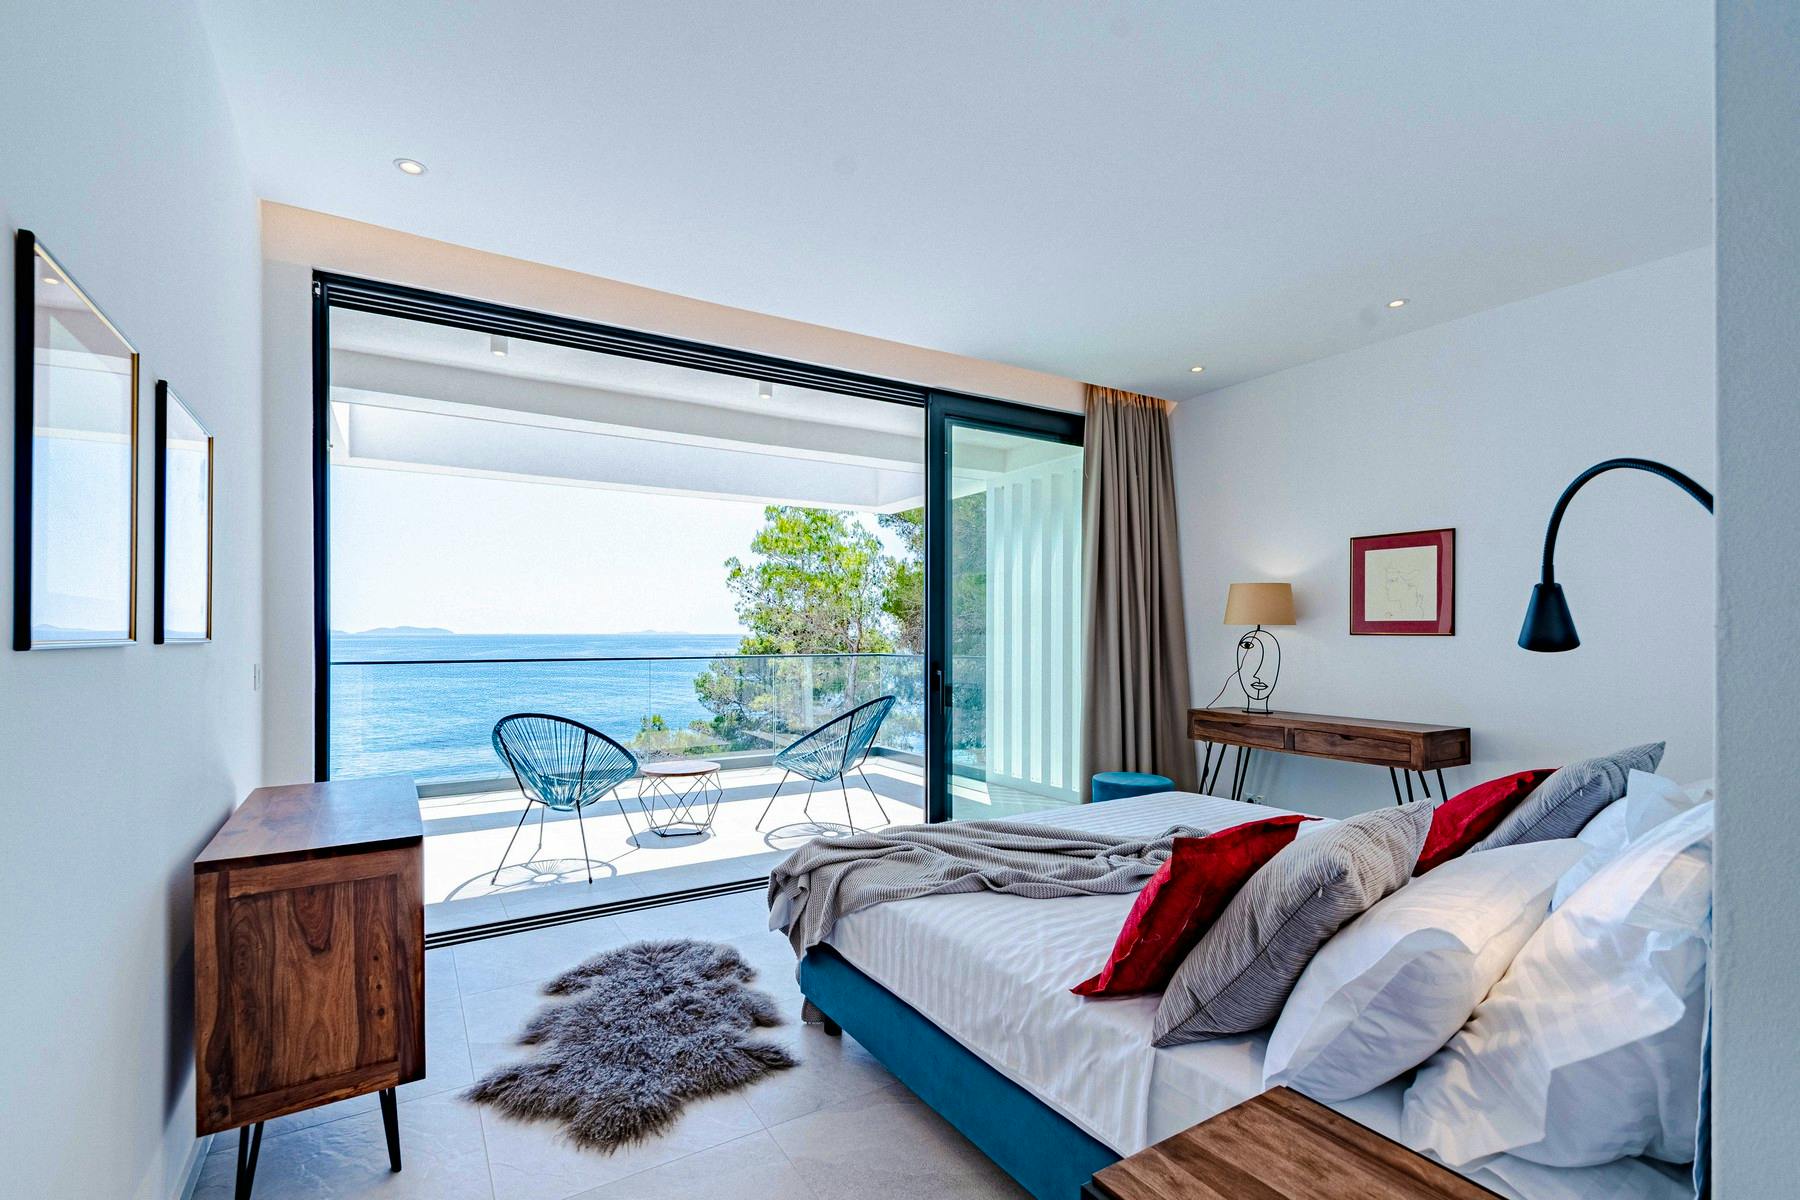 Extraordinary sea view bedroom